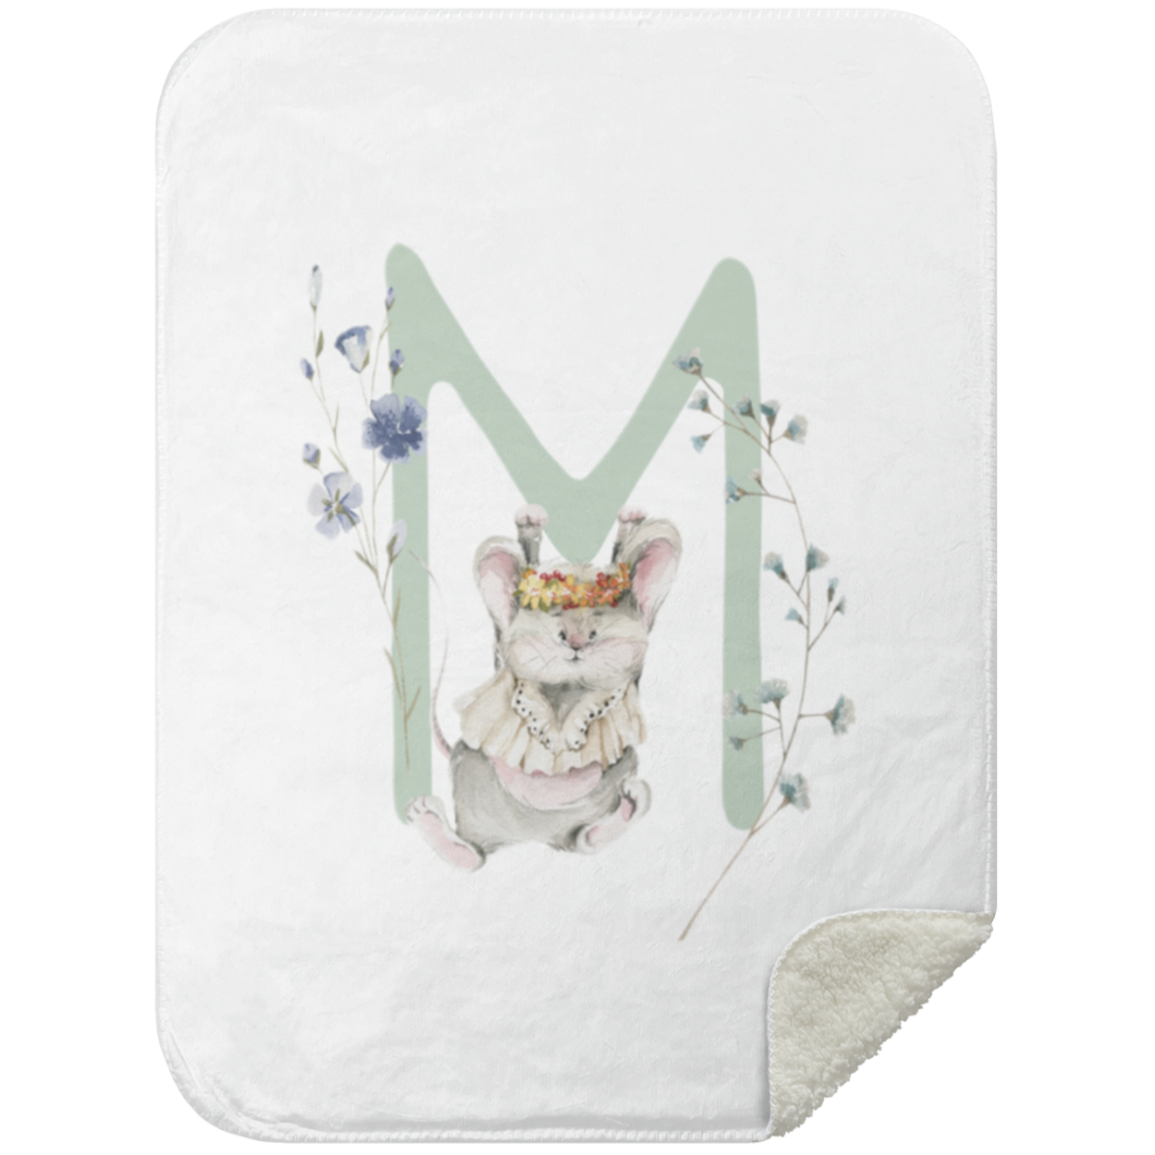 Een charmante illustratie van een Yumi Baby Deken letter M versierd met bloemenelementen en een speels geklede muis die in het midden staat, allemaal op een crèmekleurige achtergrond met een gezellige dekentextuur, perfect voor elke kinderkamer.